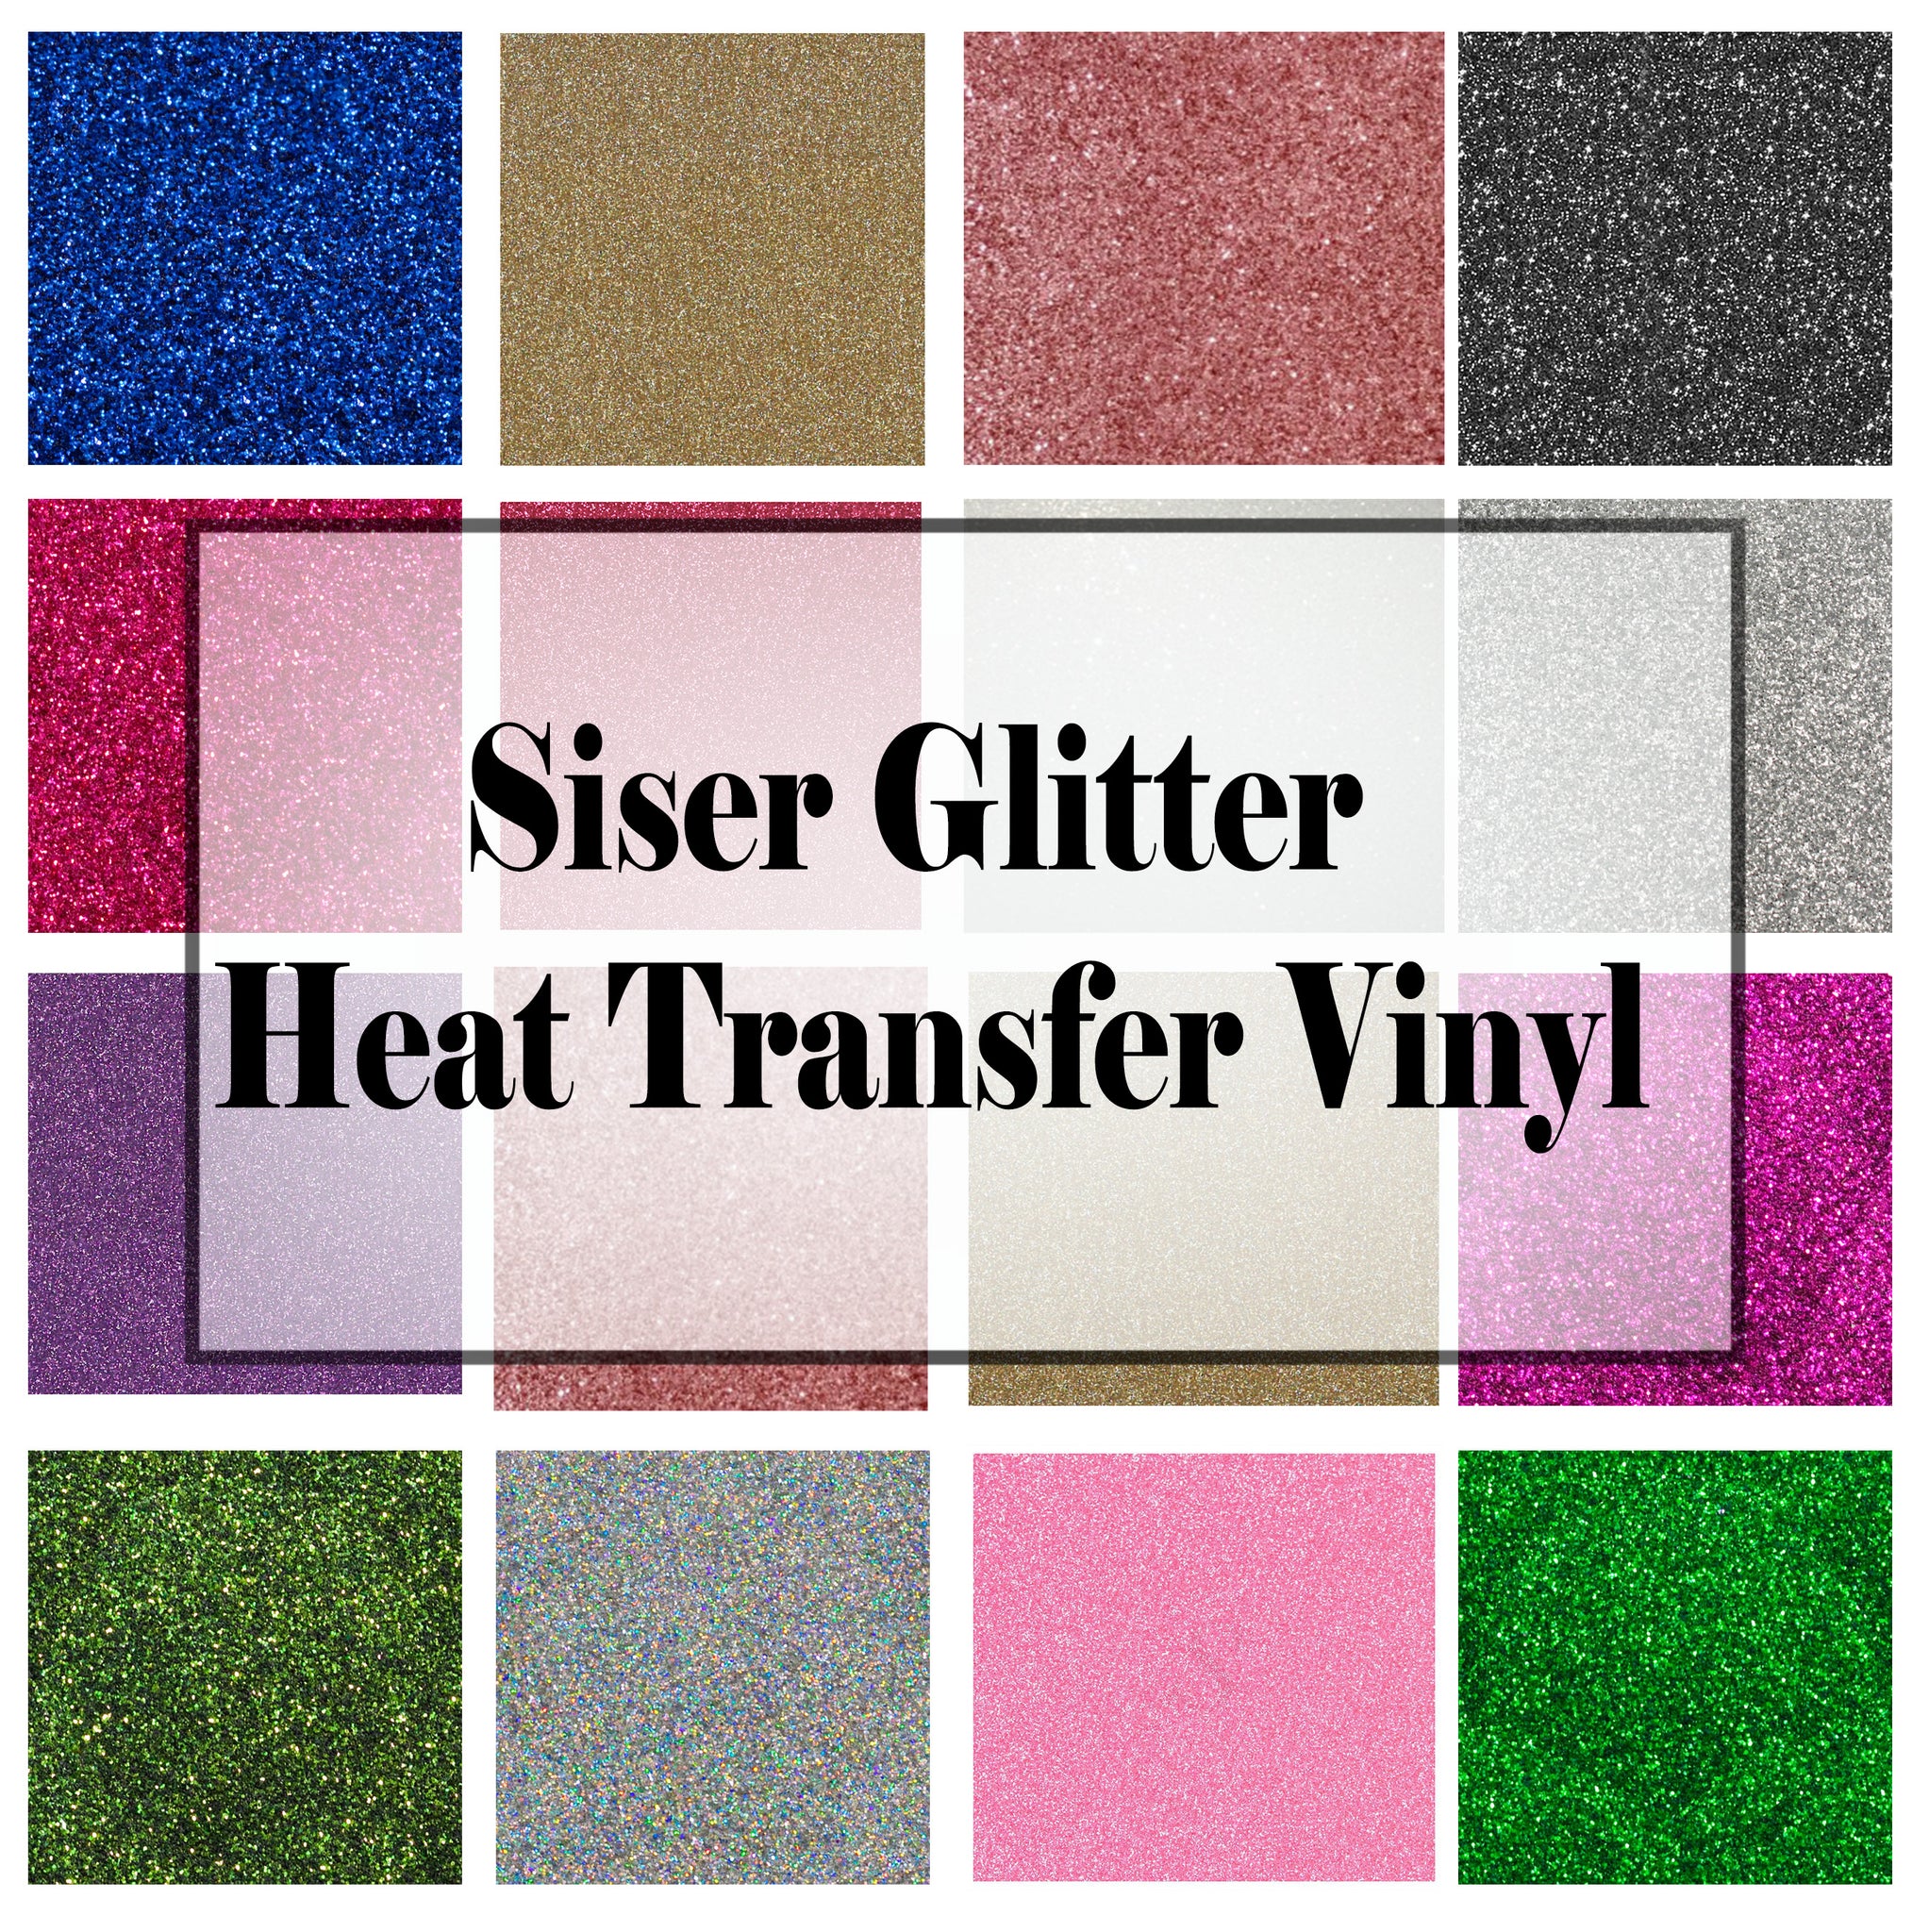 Siser Glitter HTV (heat transfer vinyl) 48% OFF – Custom Designs by Natalie